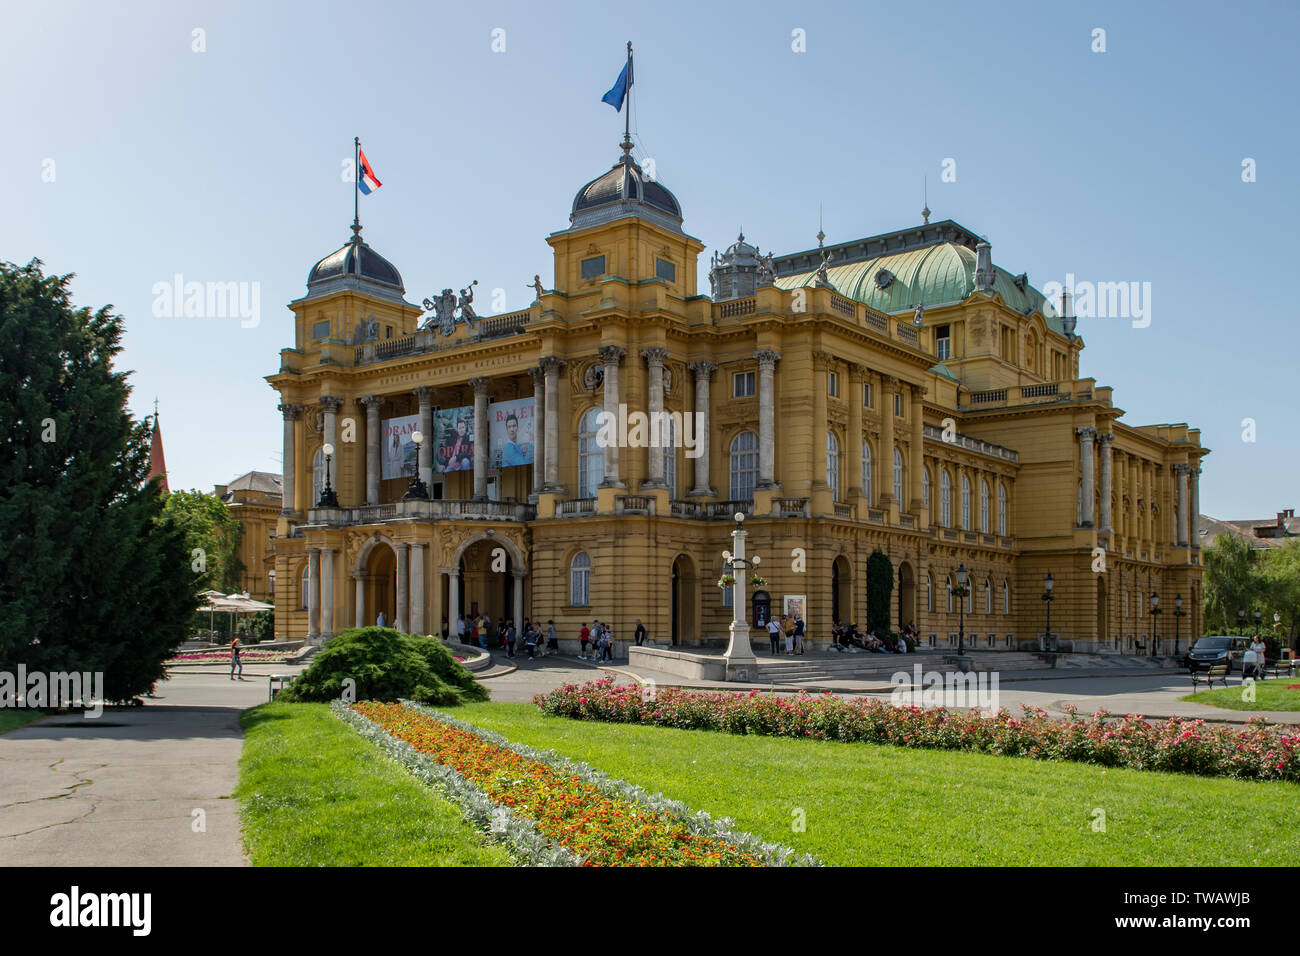 The National Theatre, Republic of Croatia Square, Zagreb, Croatia Stock Photo